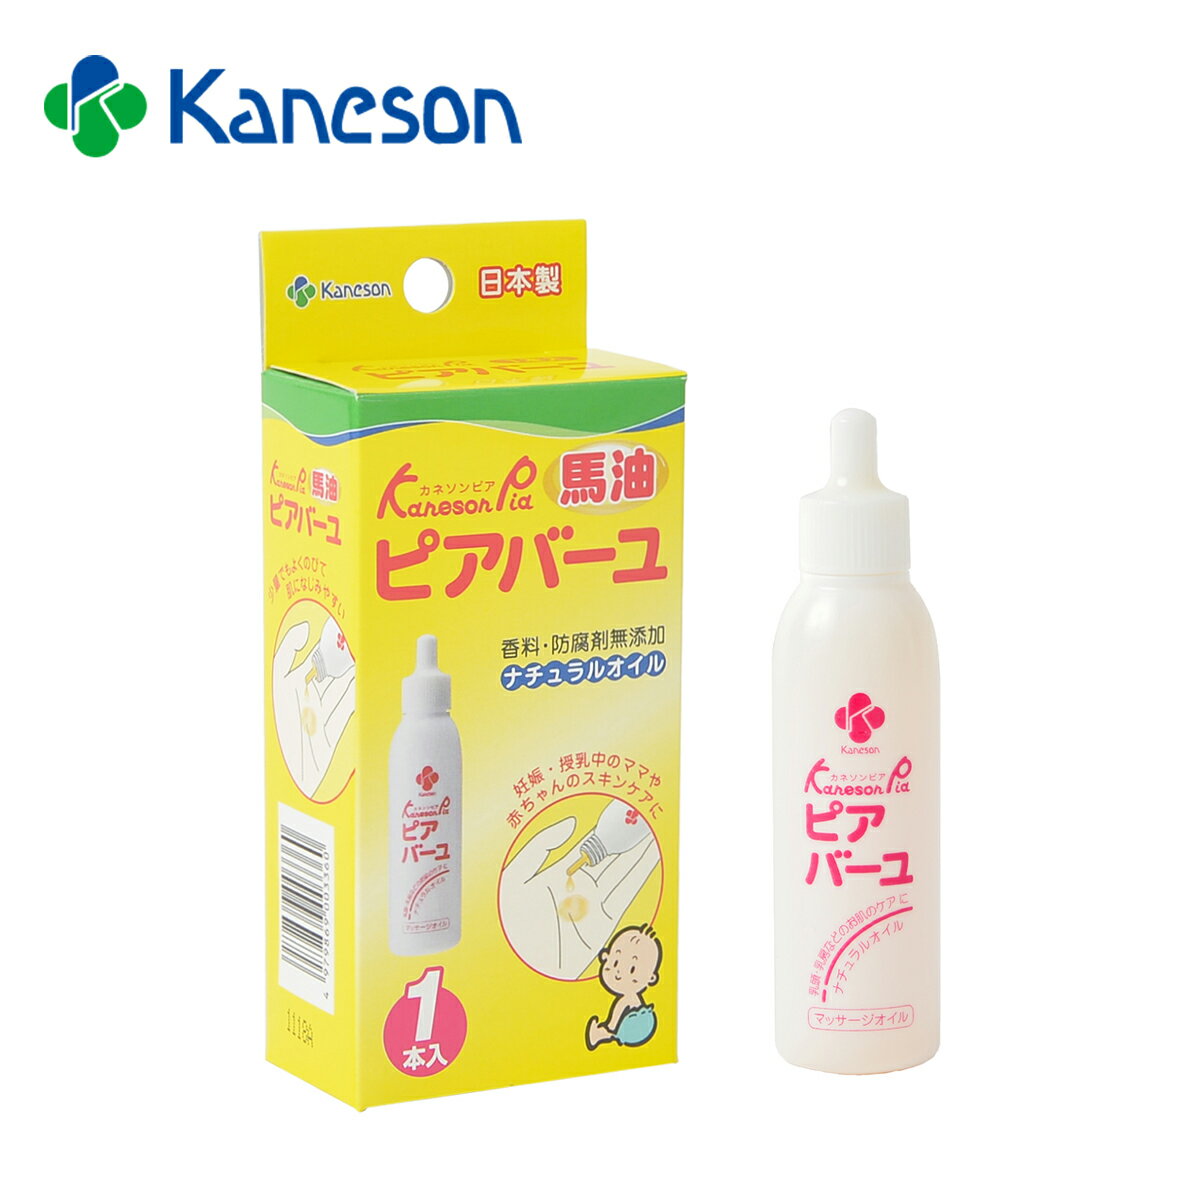 カネソン Kaneson ピアバーユ(25mL 1本入) 日本製 保湿 オイル スキンケア 天然オイル ナチュラルオイル 馬油 安心 安全 おっぱいのケア 乳頭ケア 乾燥肌 赤ちゃんのスキンケア 防腐剤無添加 よくのびる